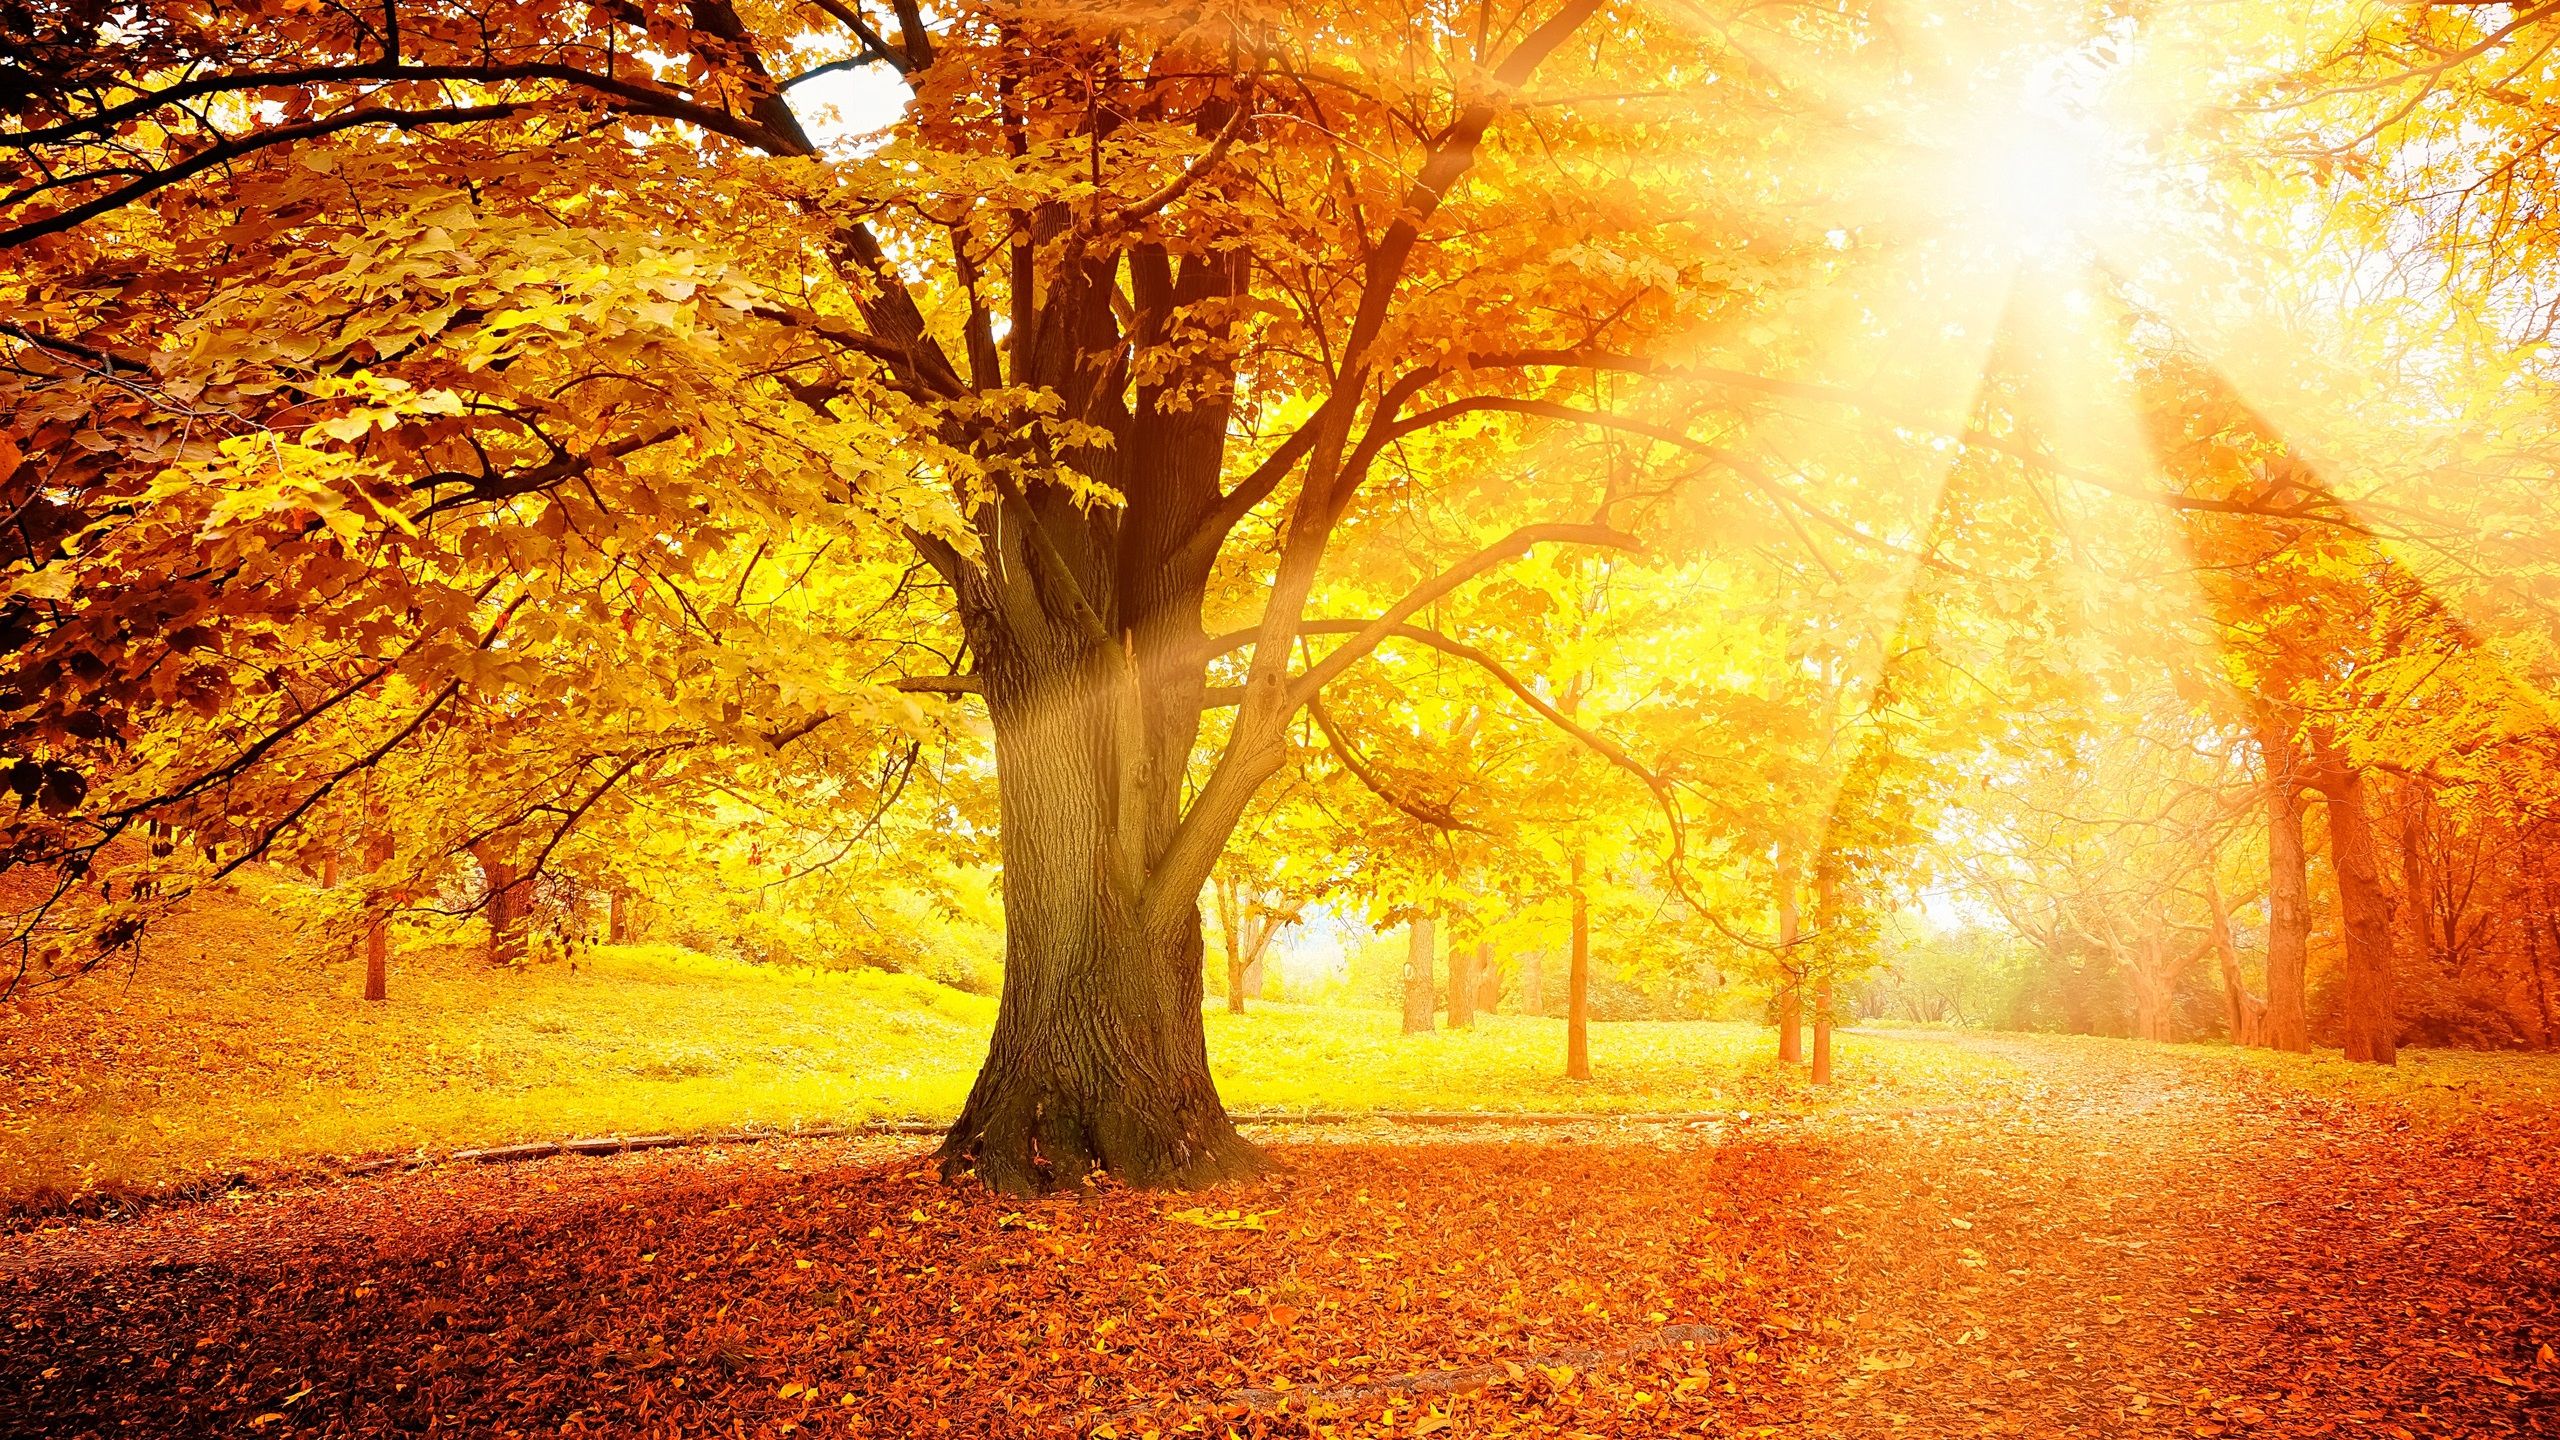 Autumn Sunsets ideas. solar installation, nature, solar solutions